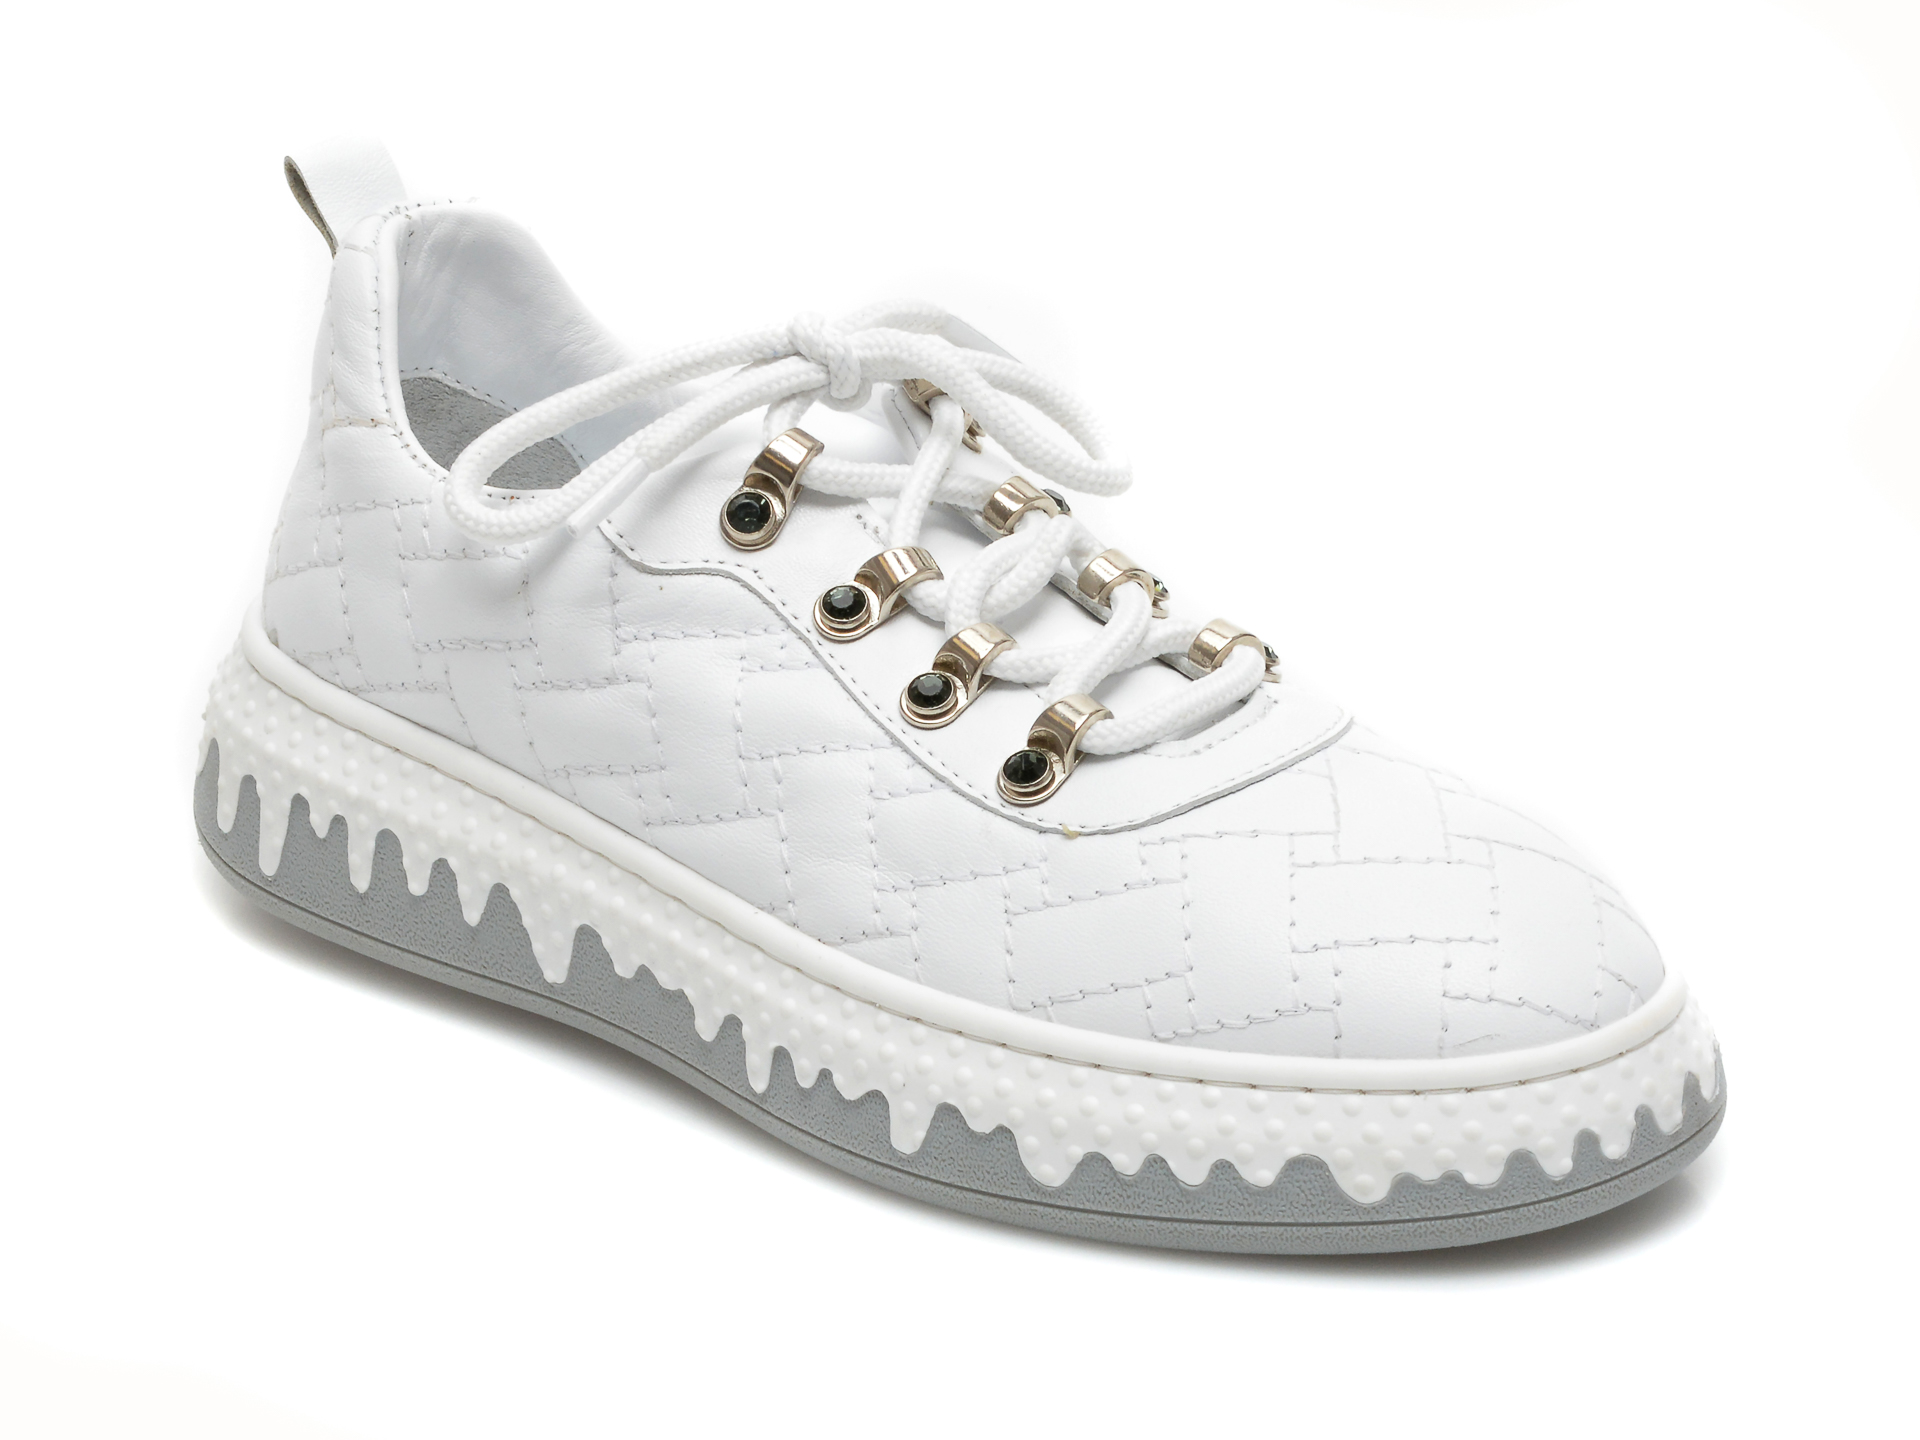 Pantofi FLAVIA PASSINI albi, 5404, din piele naturala Flavia Passini